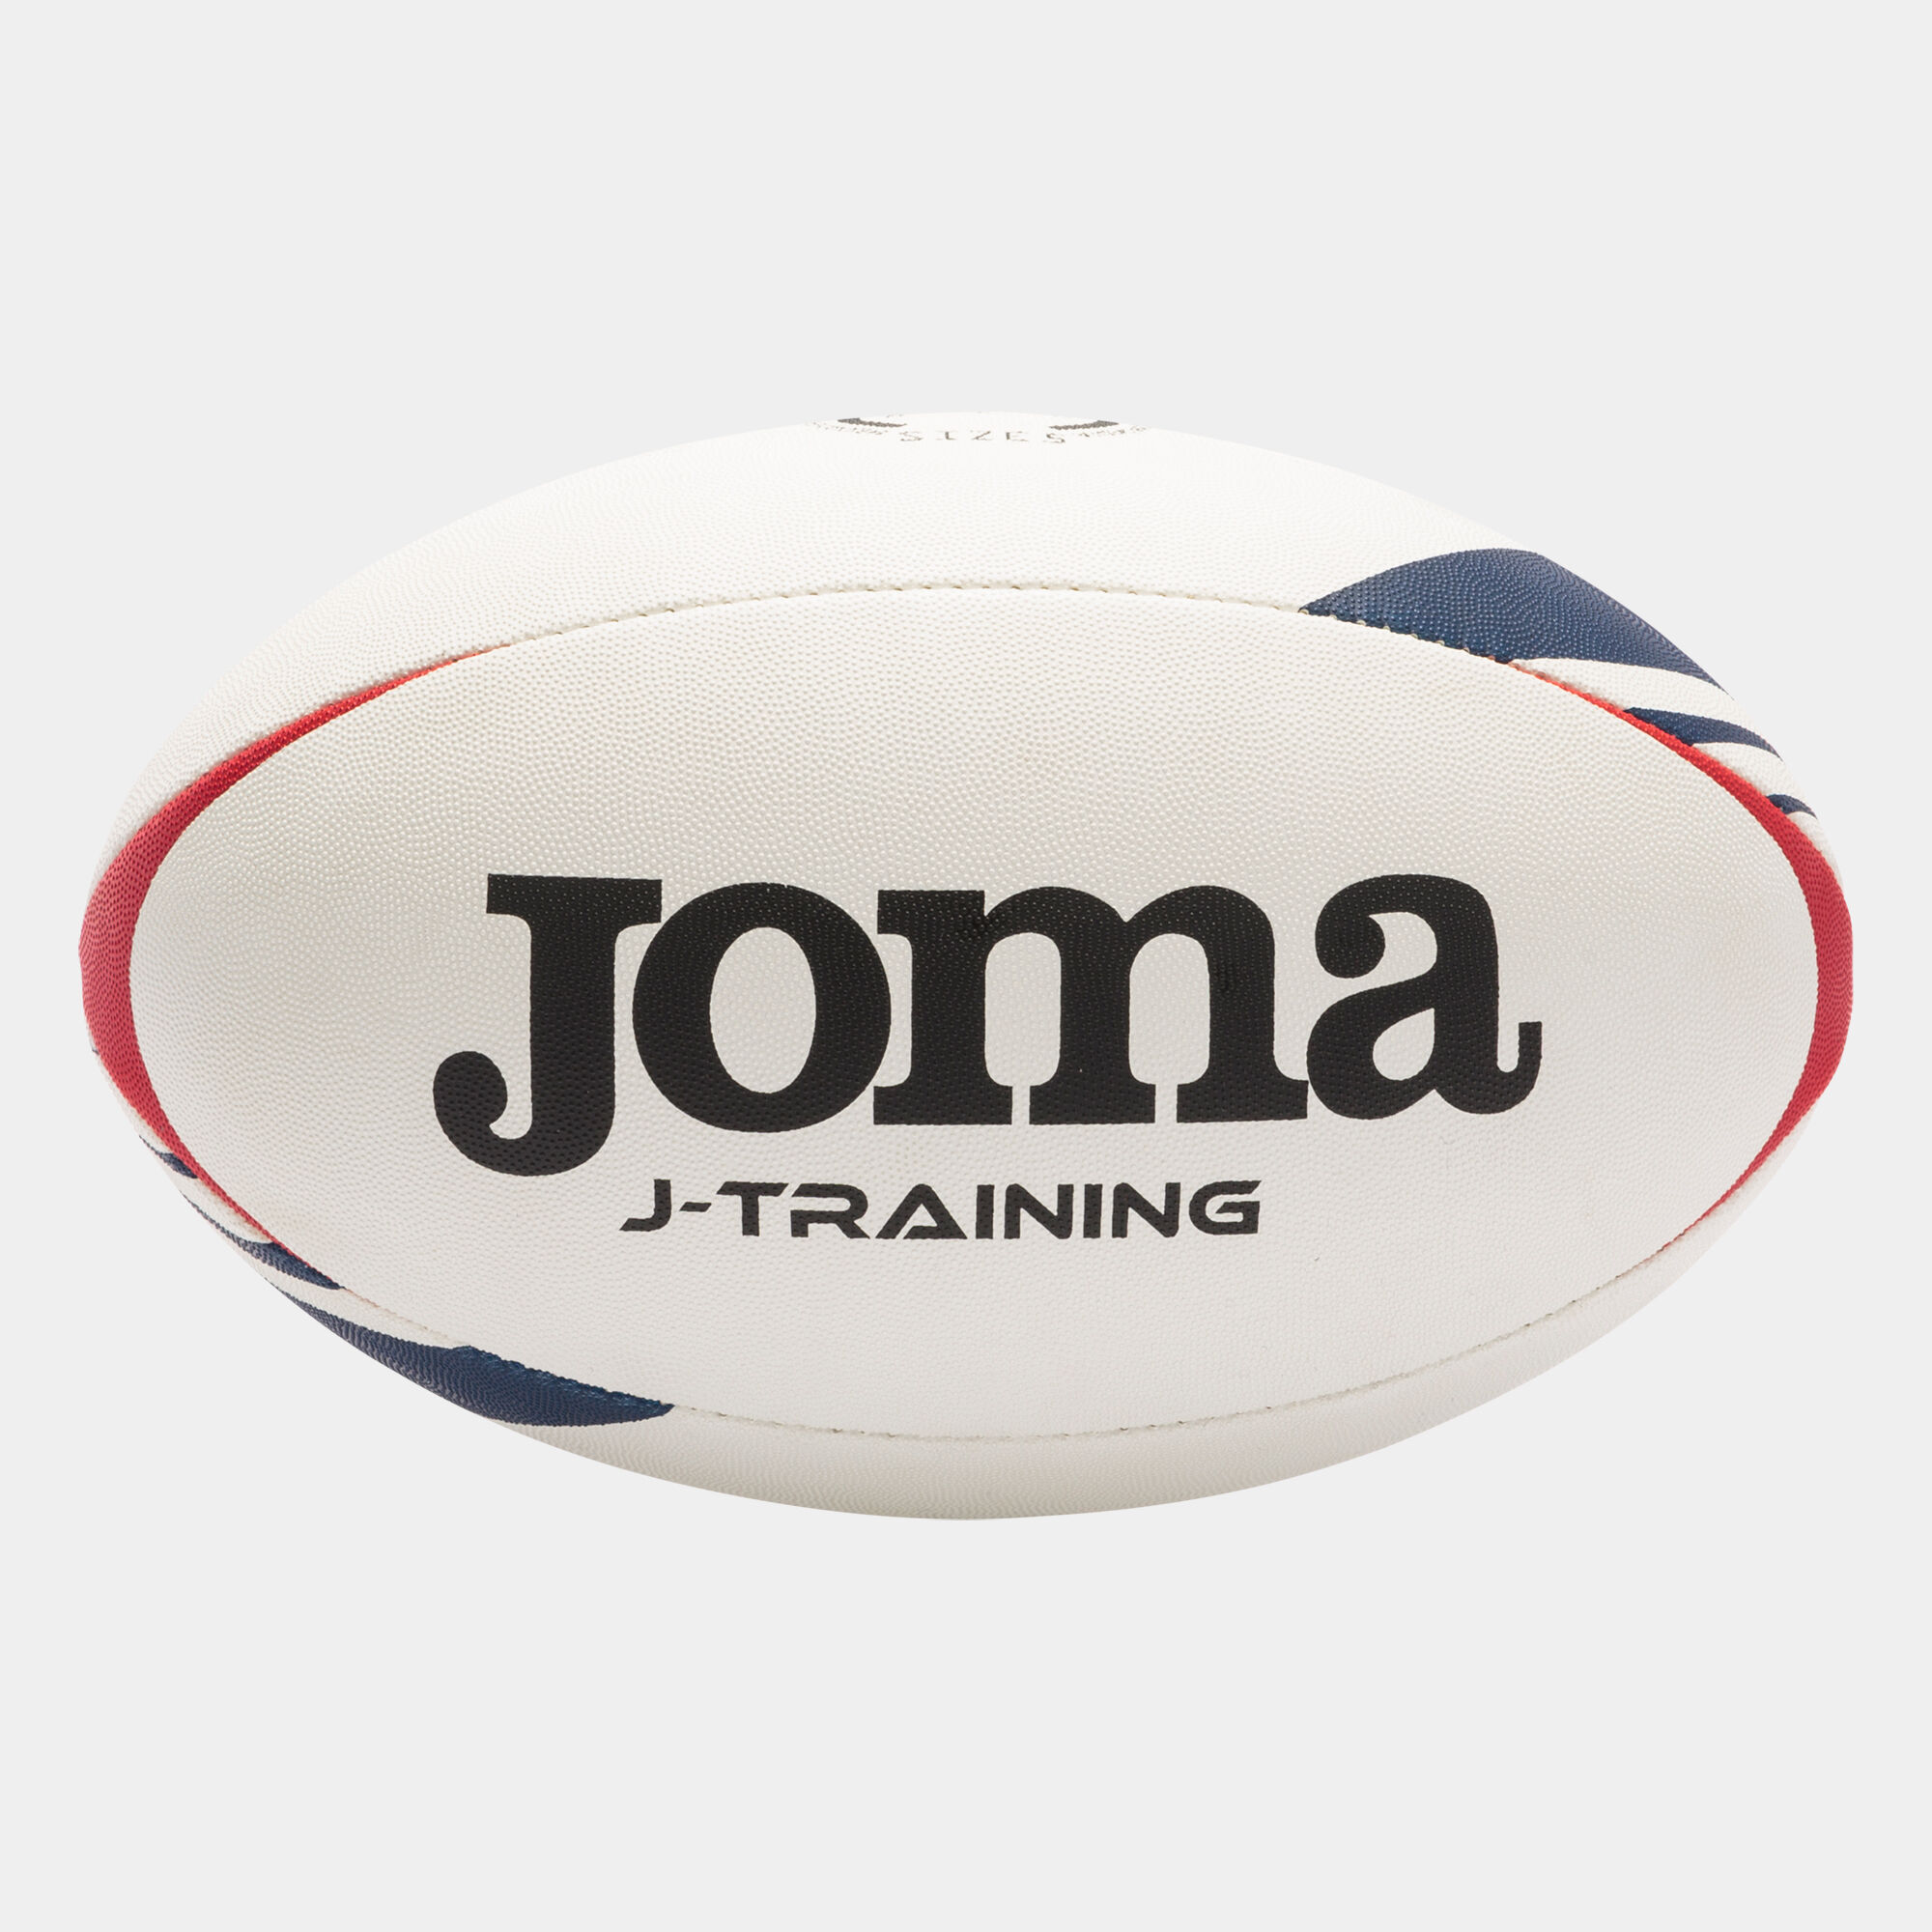 Piłka rugby J-Training bialy czerwony